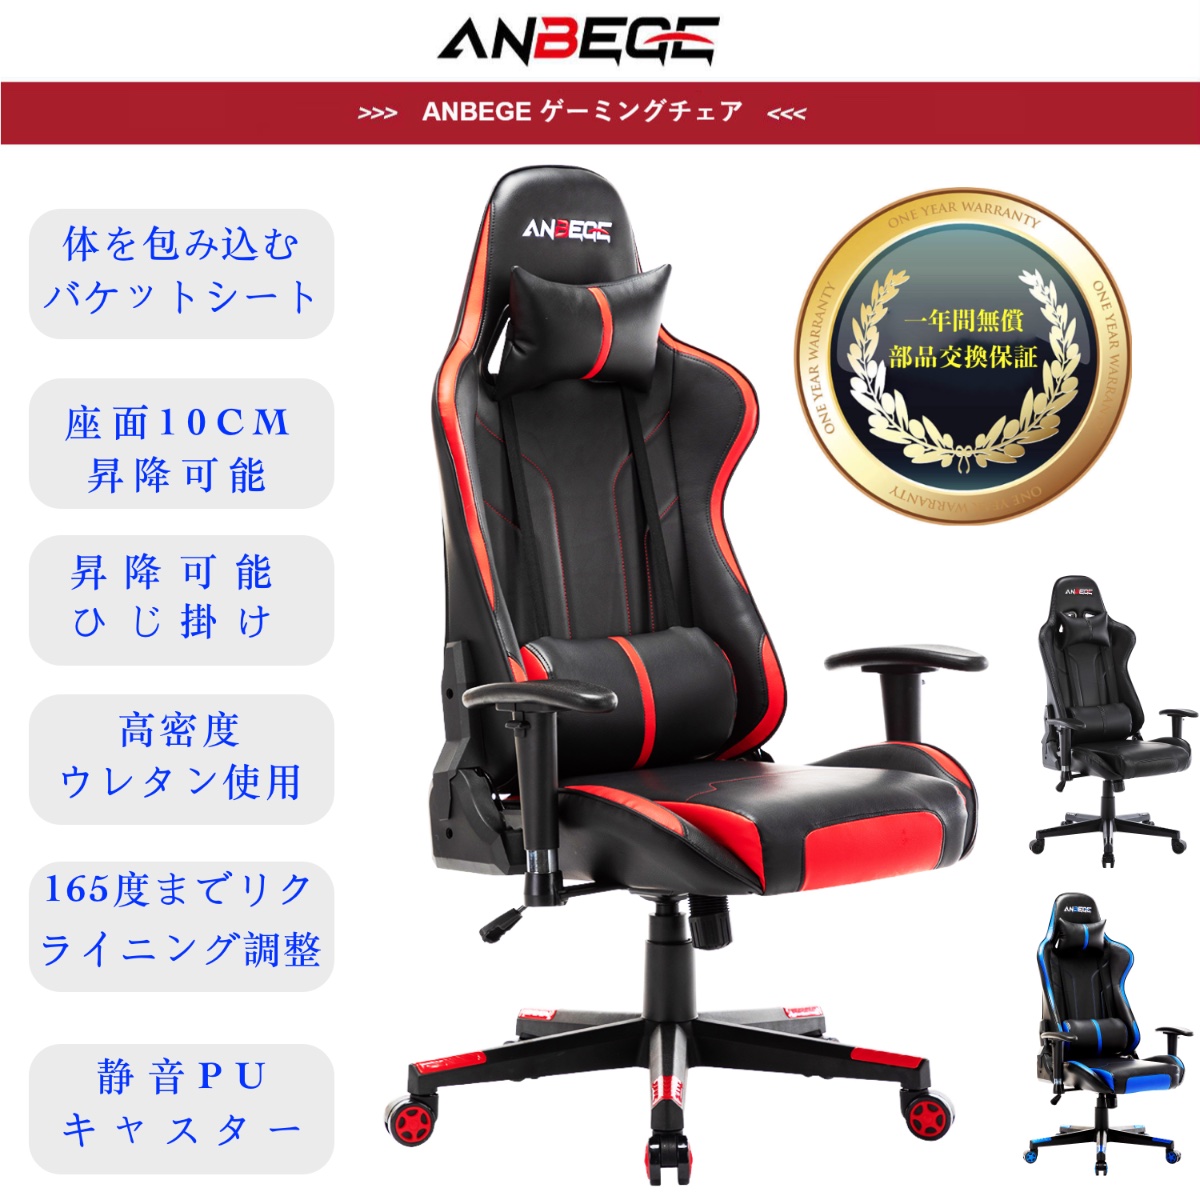 59 以上節約 ゲーミングチェア Anbege オフィスチェア デスクチェア ゲーム用チェア リクライニング パソコンチェア ハイバック ヘッドレスト多機能 耐荷重 150kg Fucoa Cl